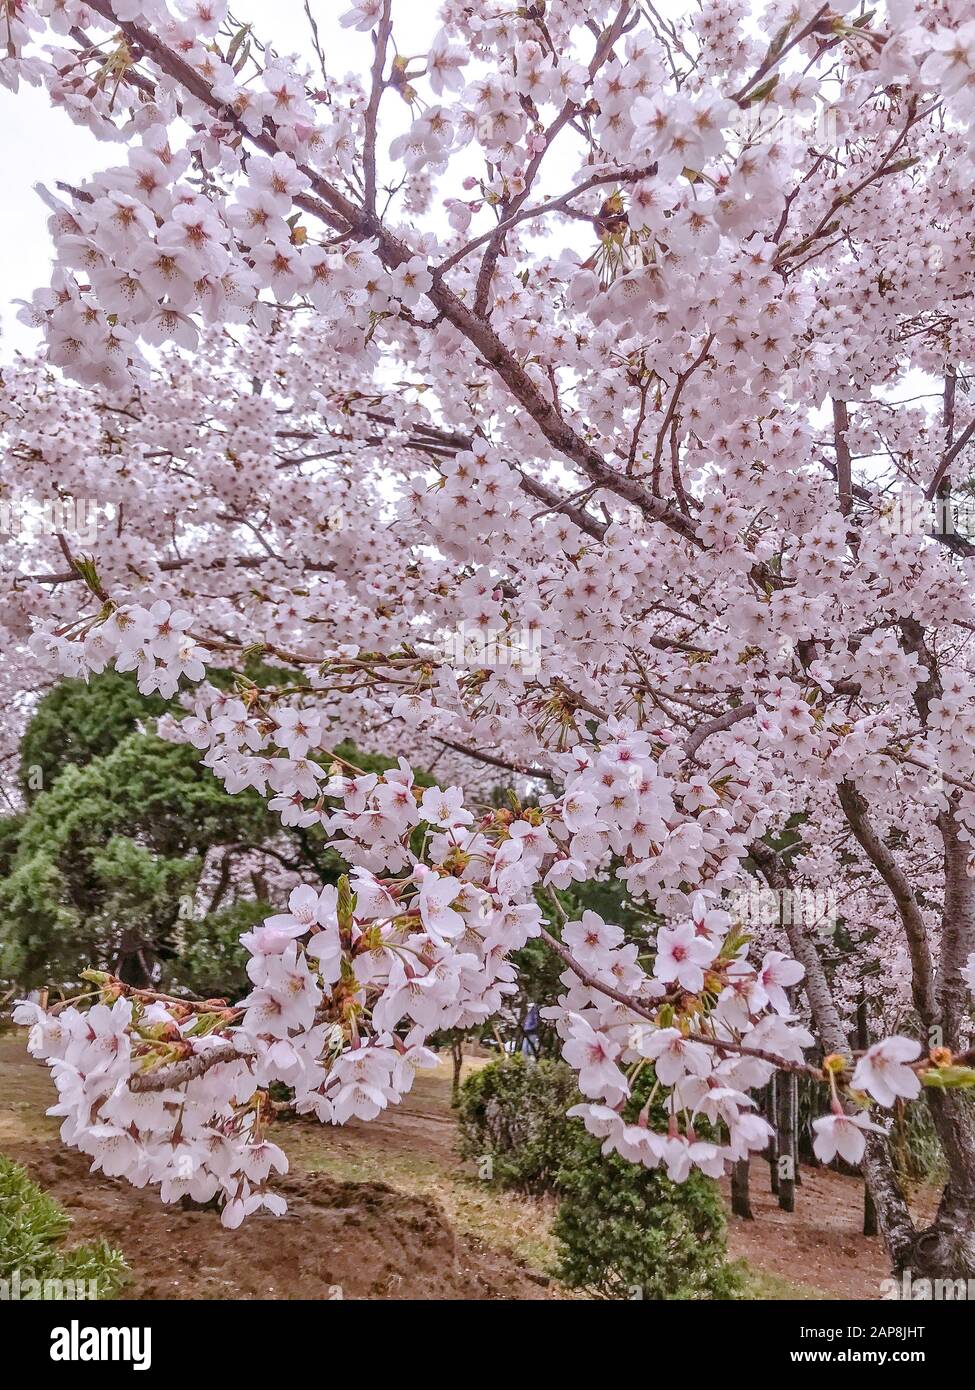 Cherry Blossom or Sakura Flowers in the garden Stock Photo